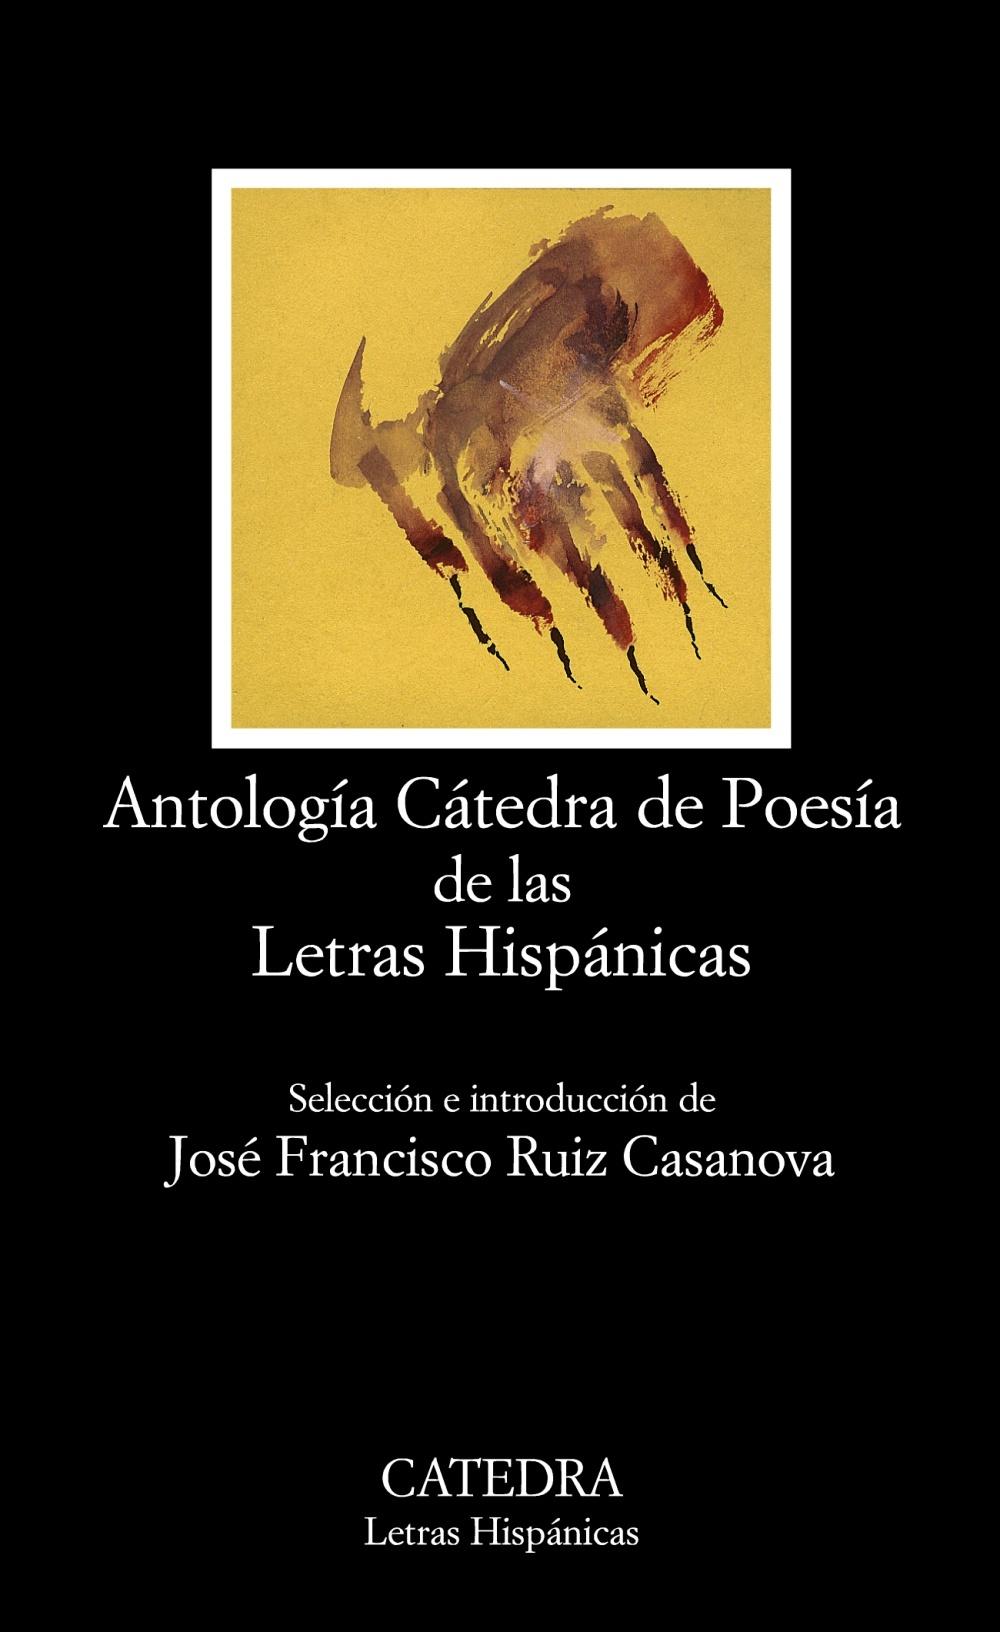 Foto Antología Cátedra de Poesía de las Letras Hispánicas